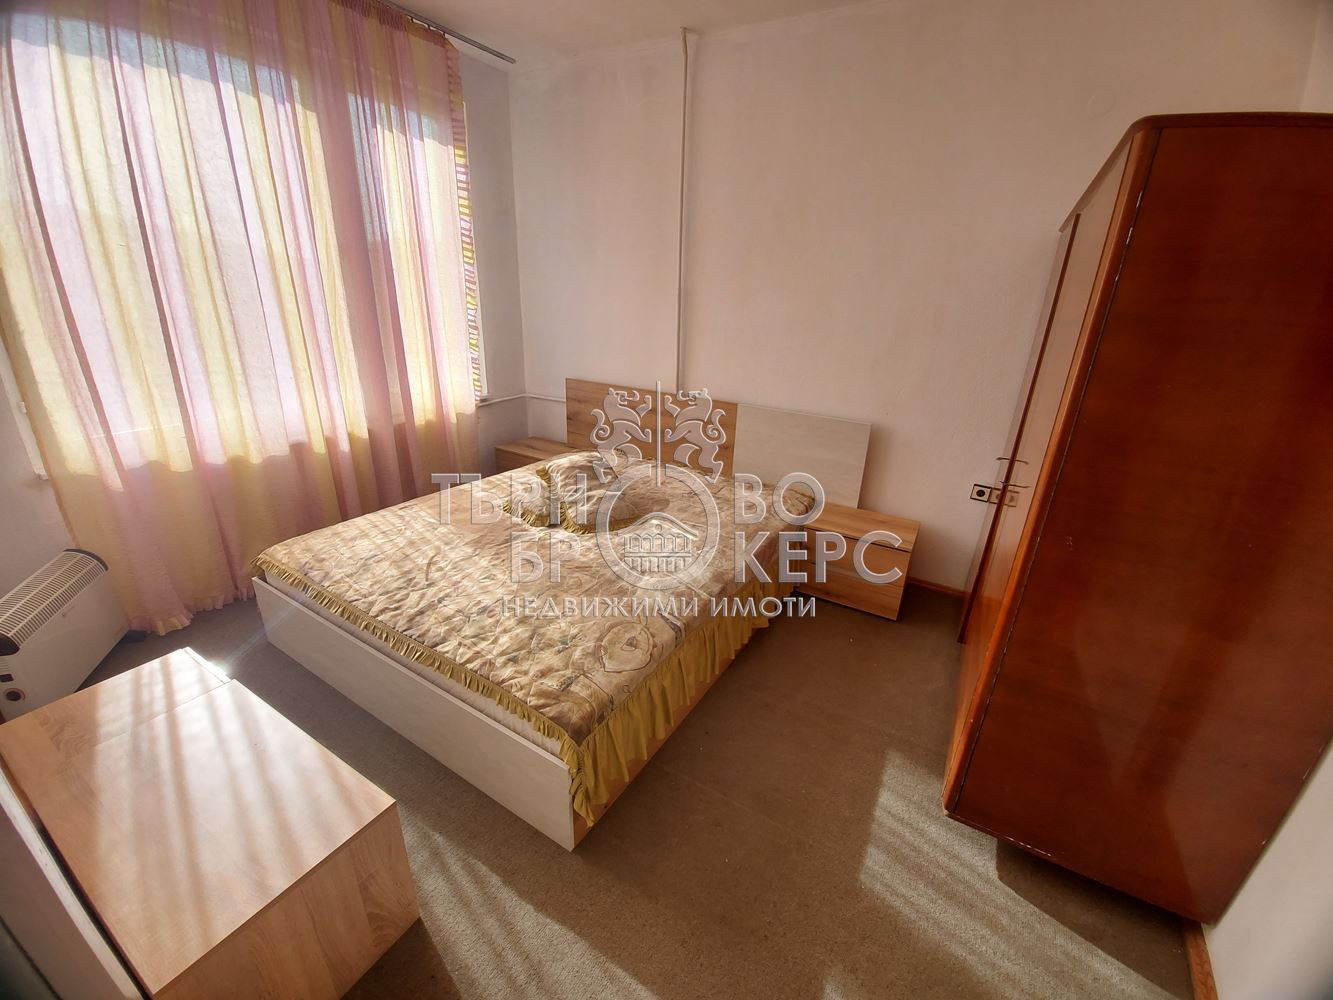 Тристаен апартамент  във  Велико Търново за 400  лв - Изцяло южен